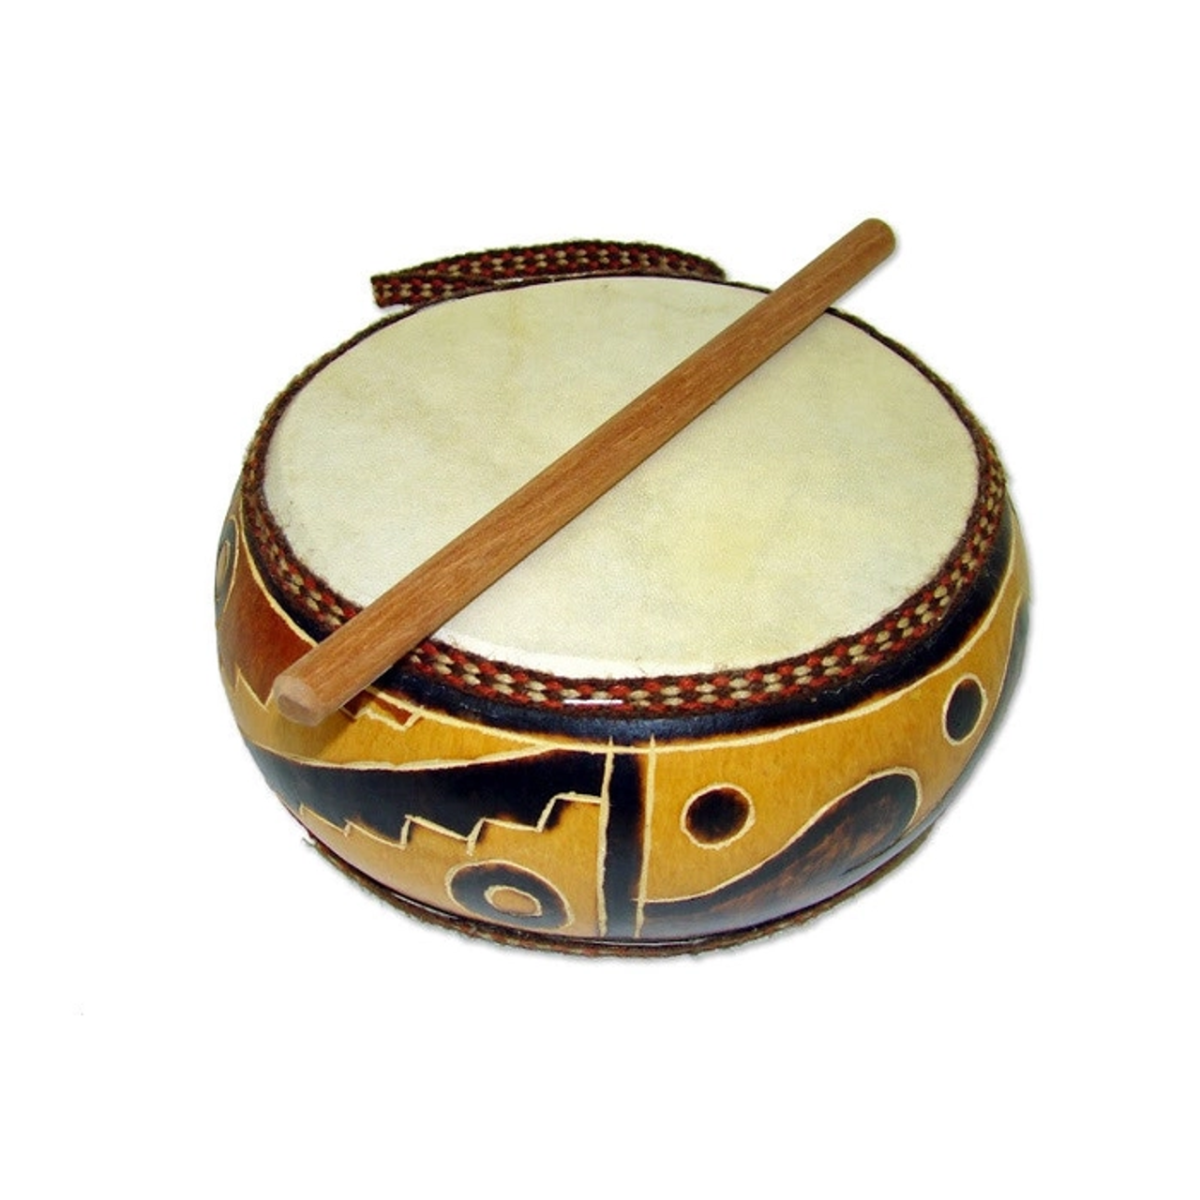 Этнические музыкальные инструменты